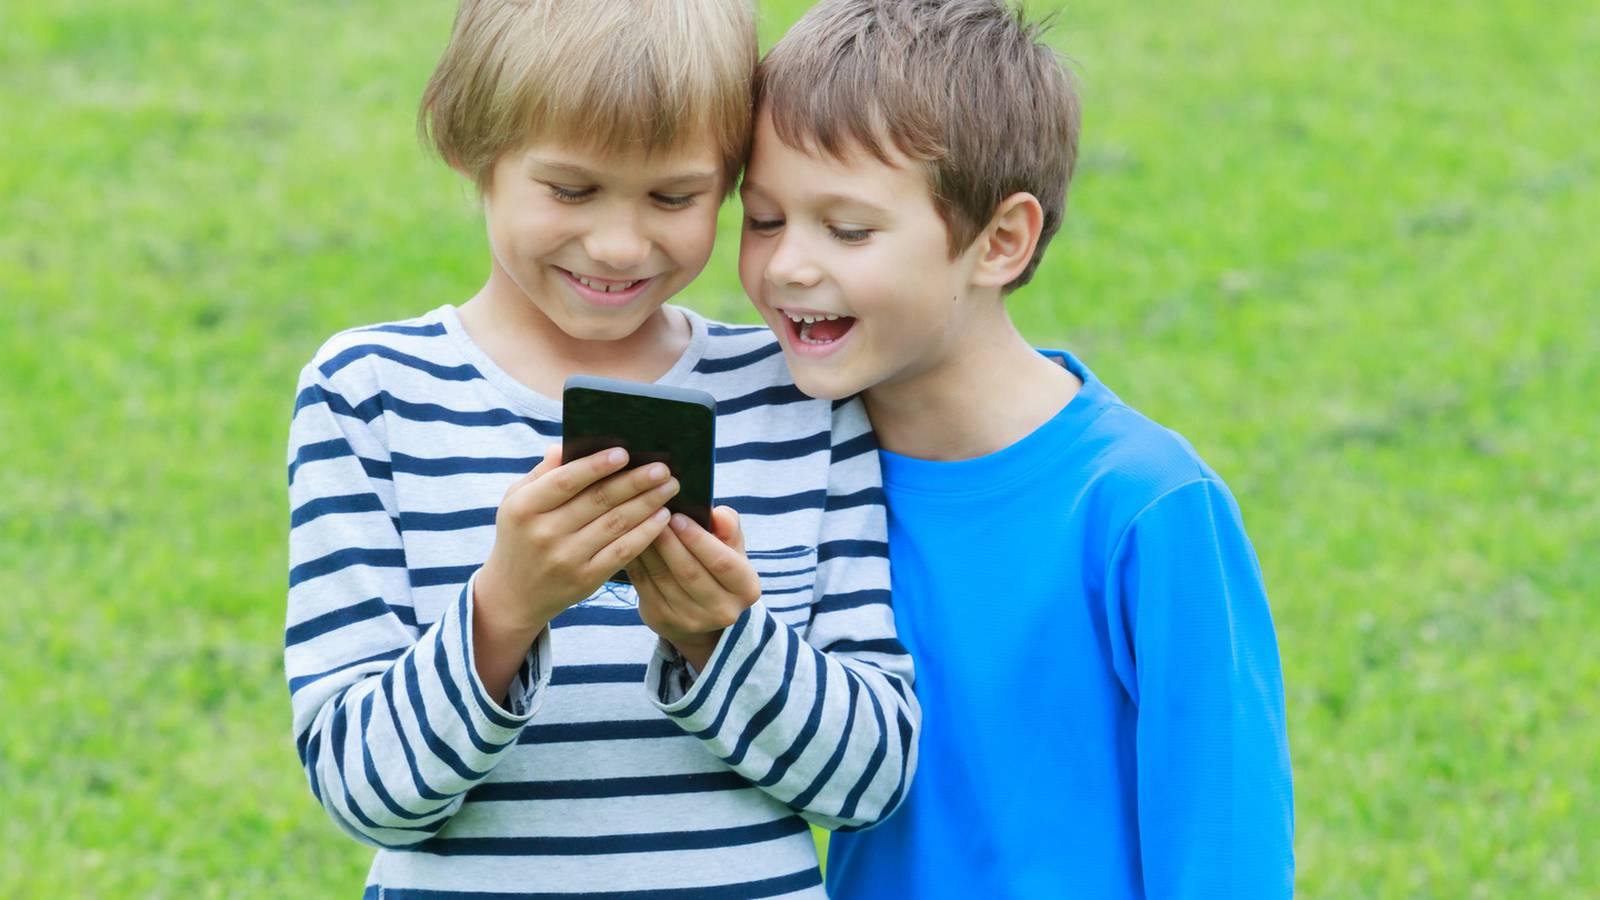 18 где мальчик с мальчиком. Ребенок со смартфоном. Мальчик с телефоном. Дети на траве со смартфонами. Ребёнок в иелефоне вертикальная.